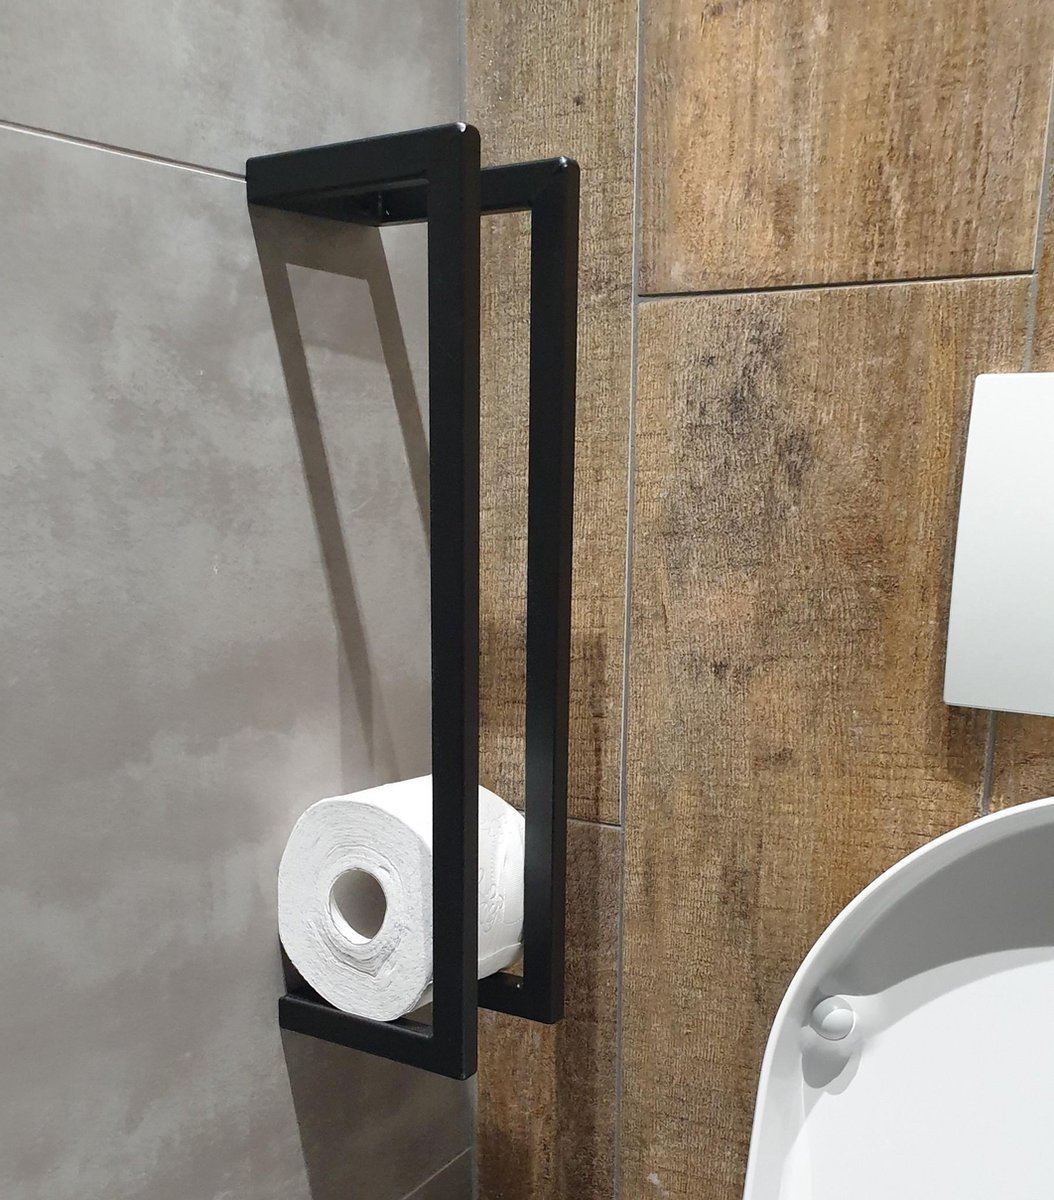 support de rouleau de papier toilette en aluminium noir support papier toilettes,Boîte de papier hygiénique de style européen de salle de bains 